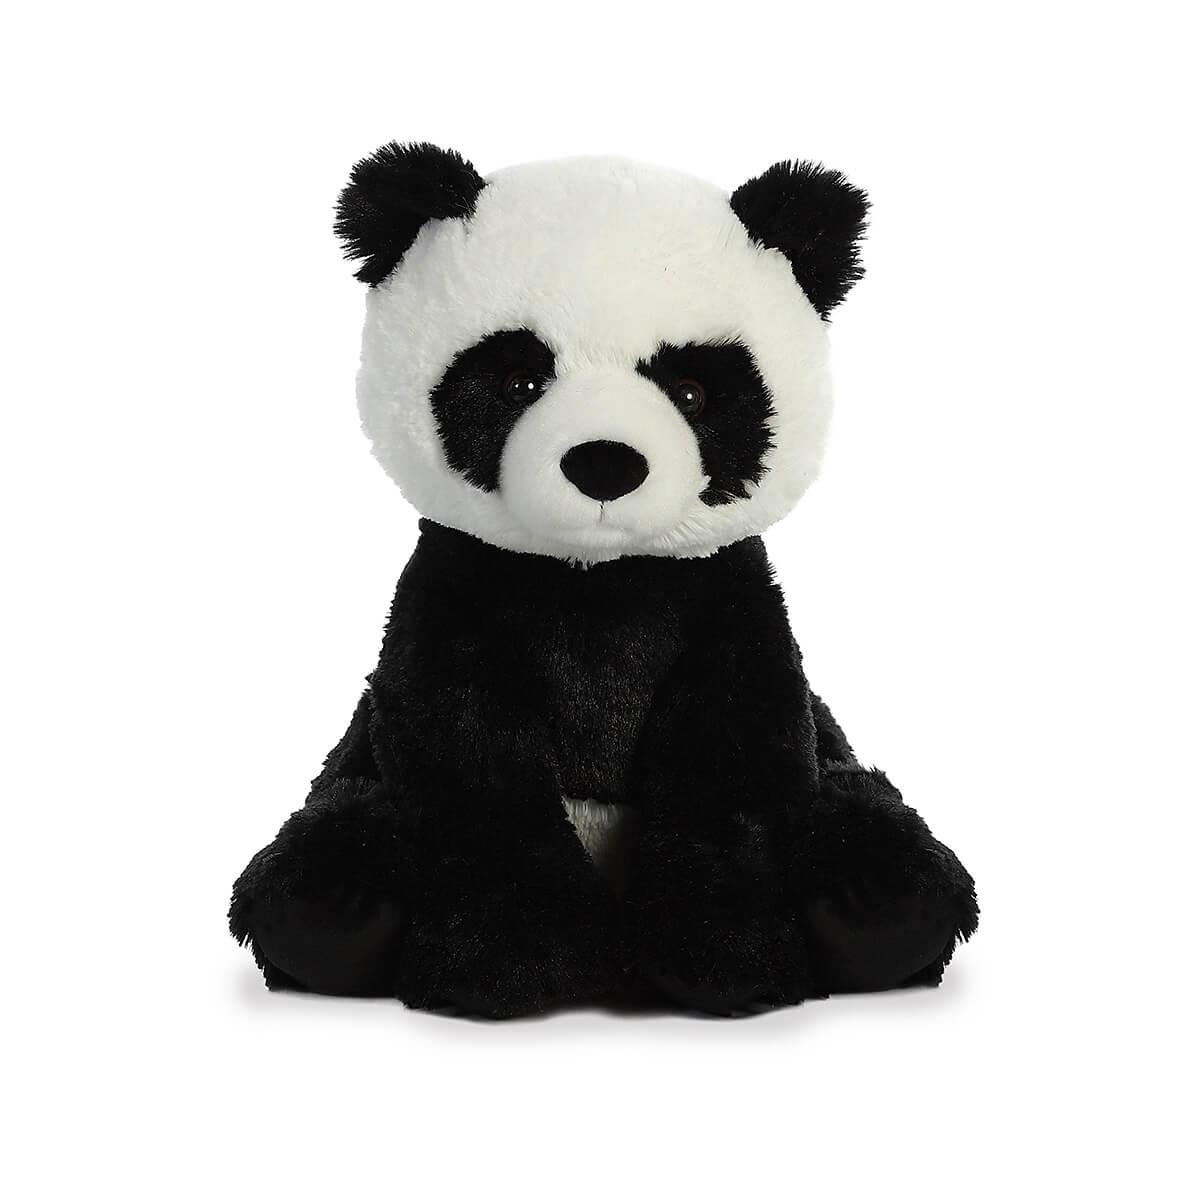  Panda Plush Toy